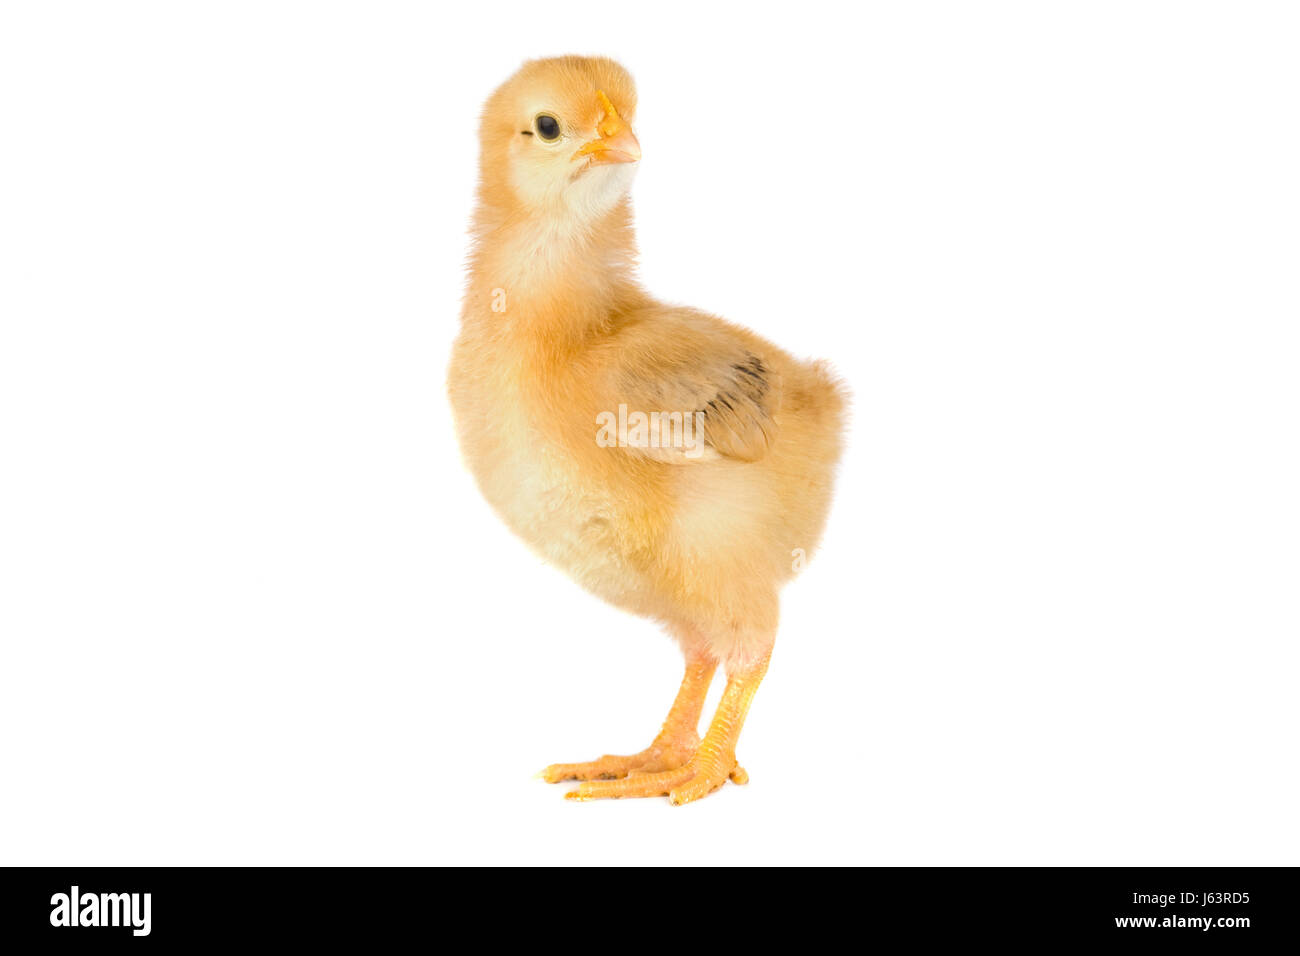 Oiseau jaune poulet seule vie exister en vivant vit isolé doux Banque D'Images